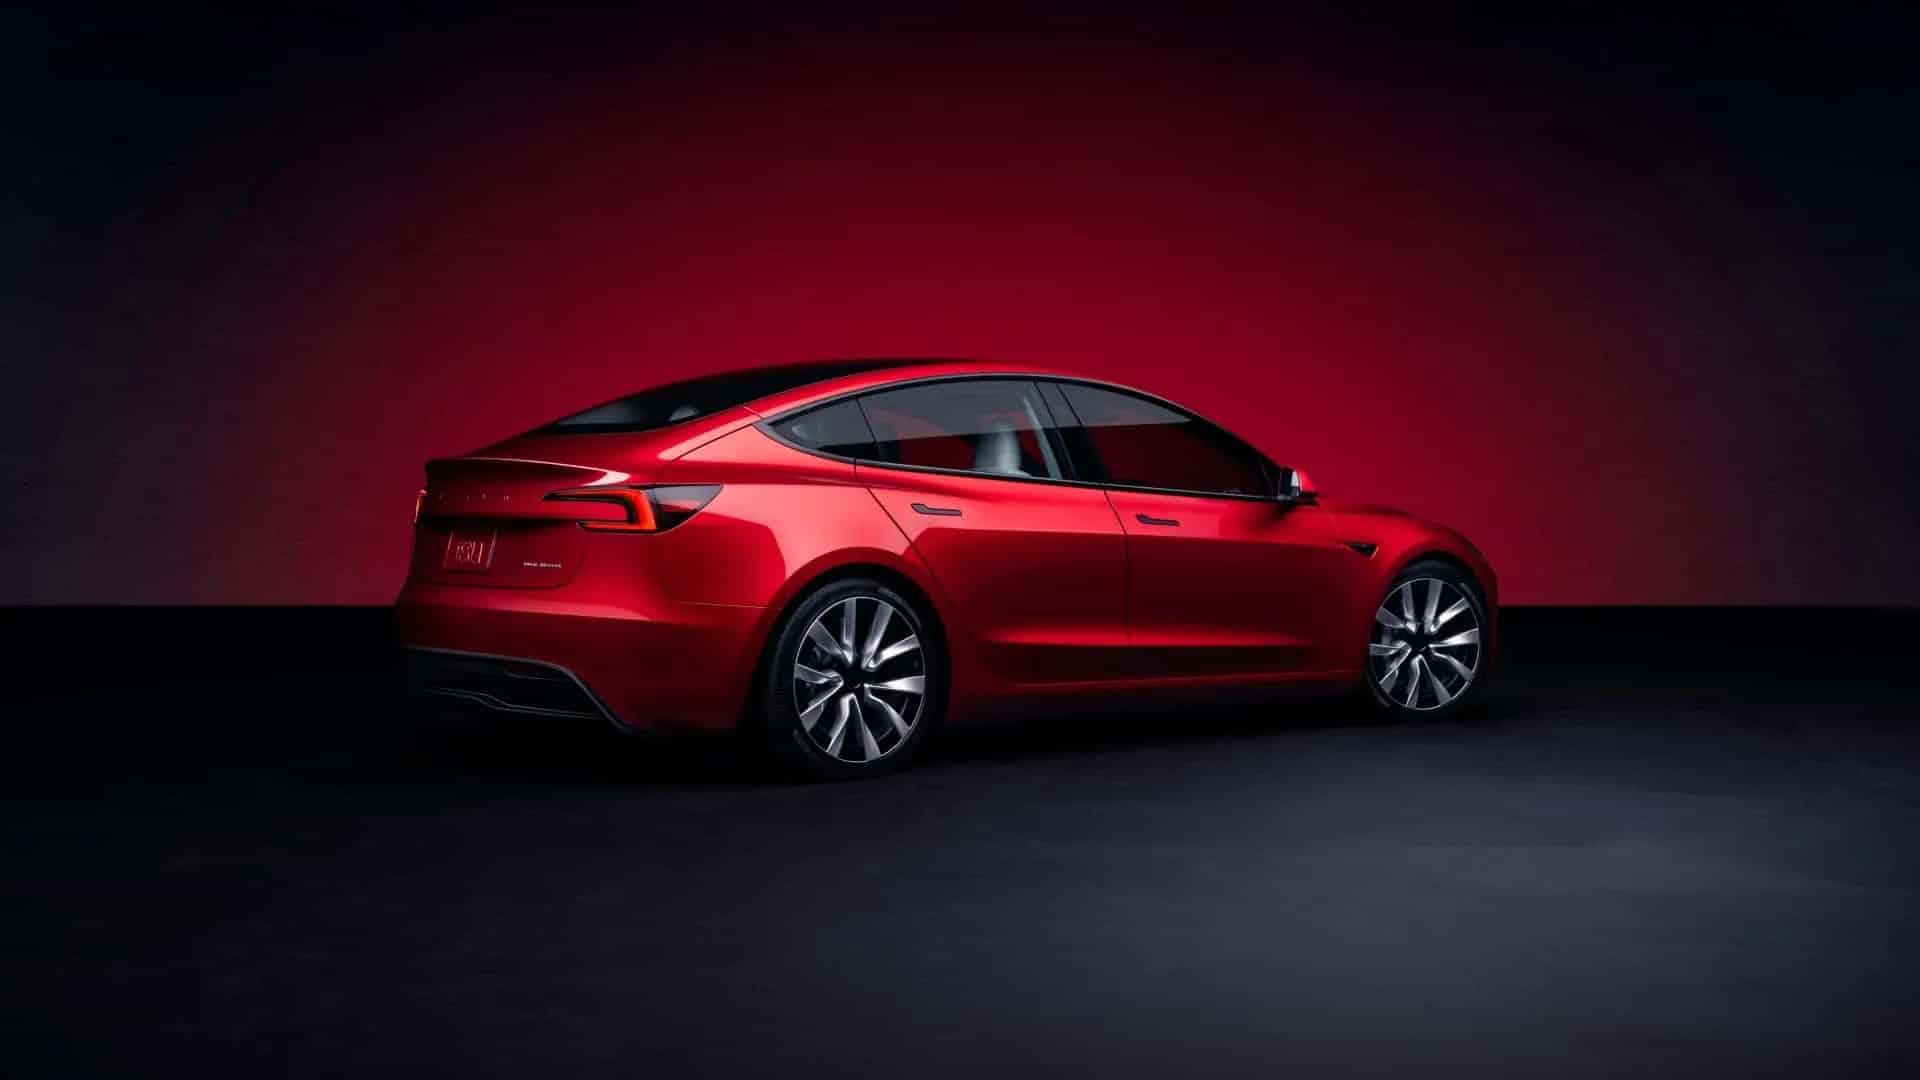 Tesla Model 3 Interior Design Photo Leaked – The Last Driver License Holder…